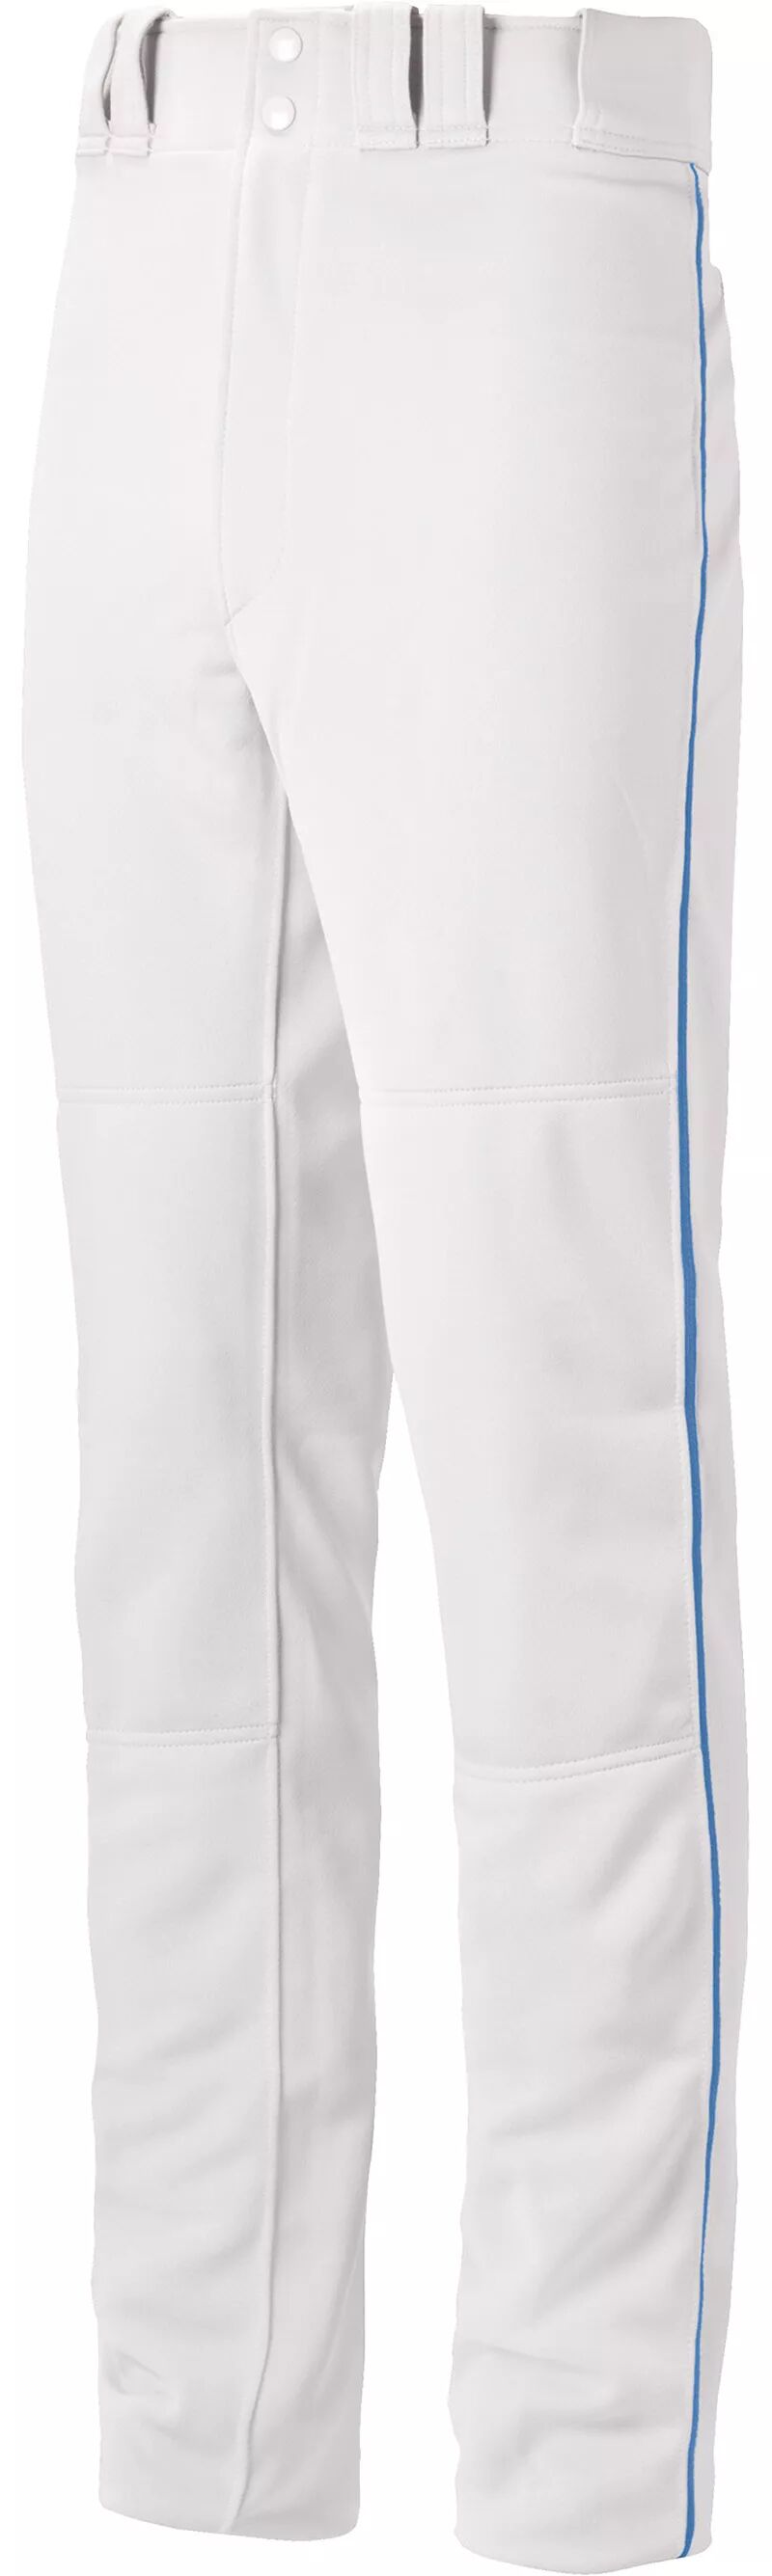 Бейсбольные брюки Mizuno Select Pro для мальчиков с окантовкой бейсбольные брюки 22